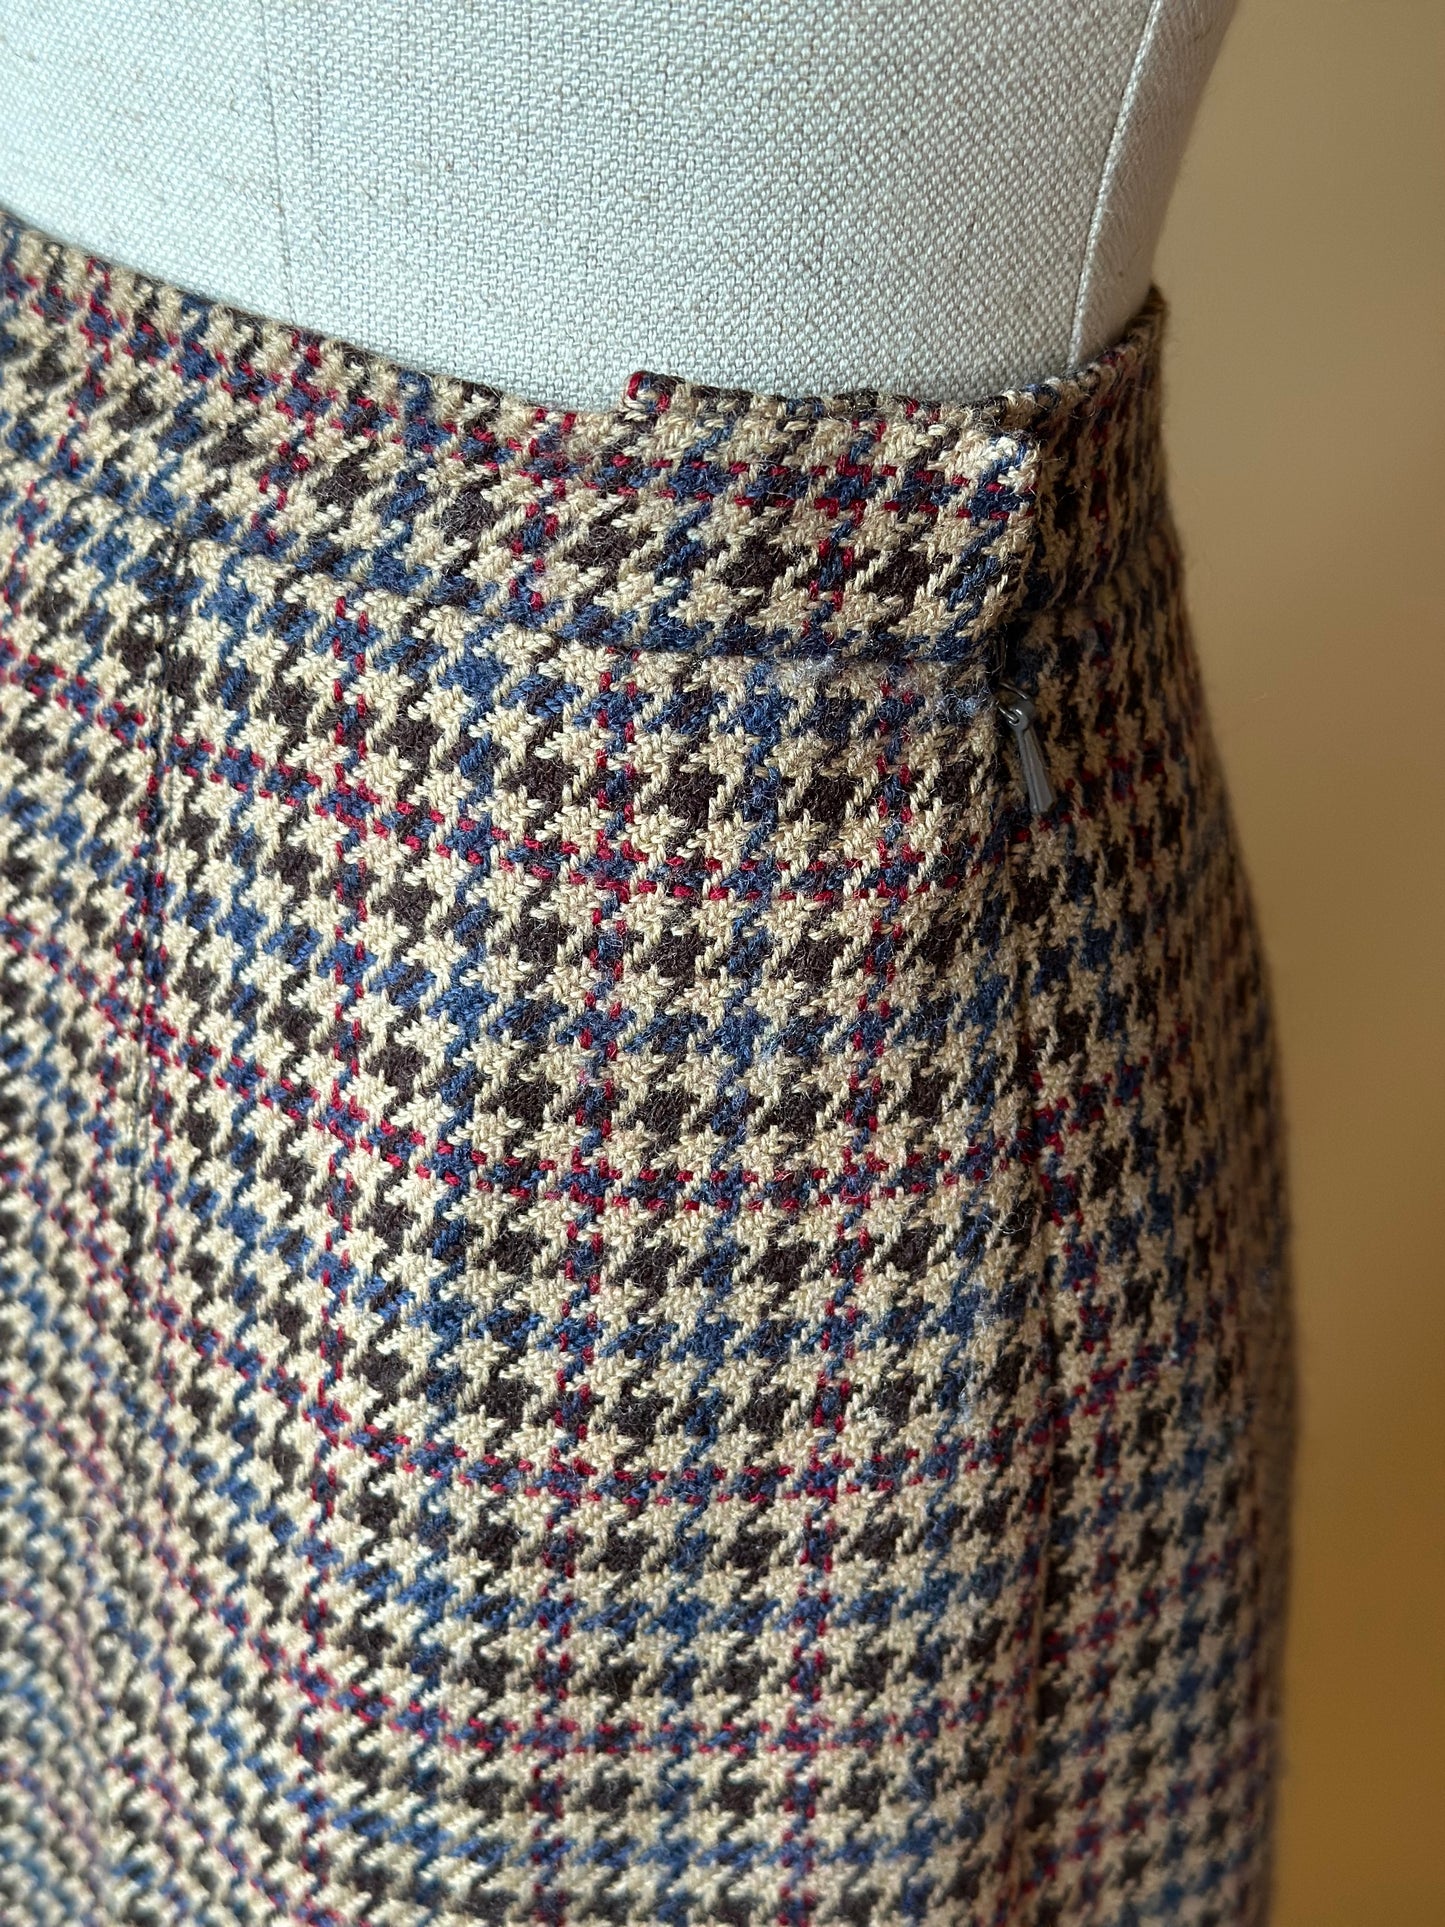 Vintage Burberrys Pied De Poule Skirt